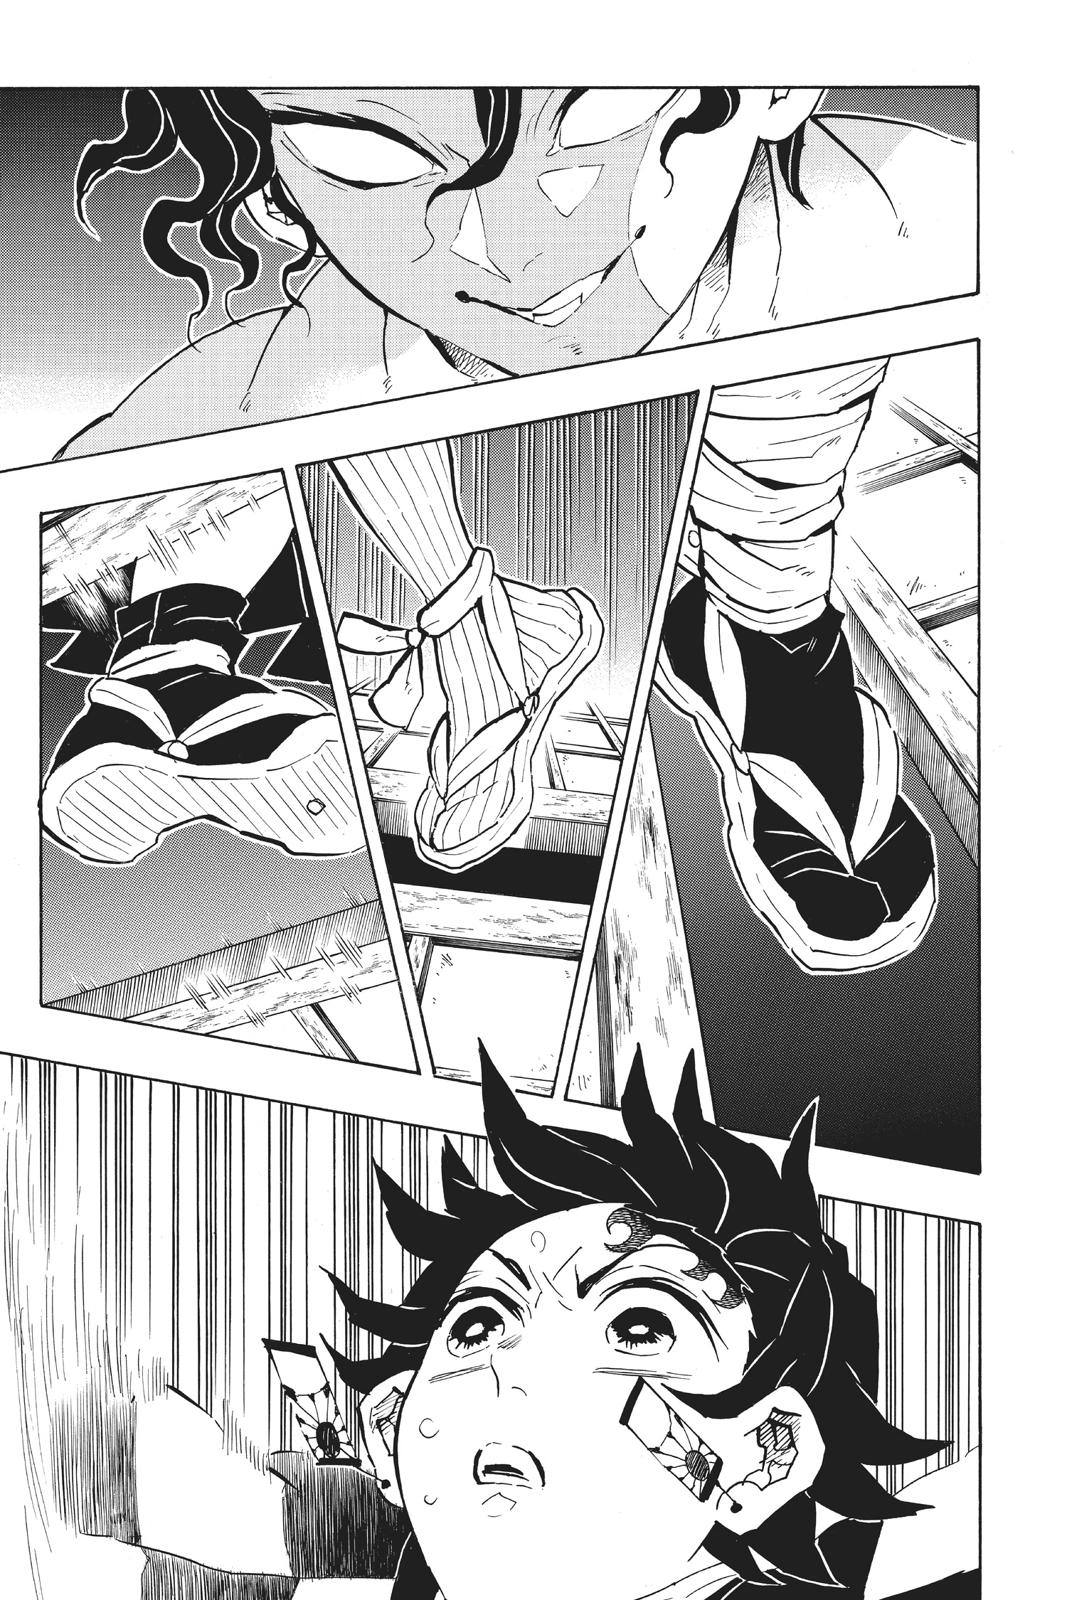 Demon Slayer Manga Manga Chapter - 139 - image 12